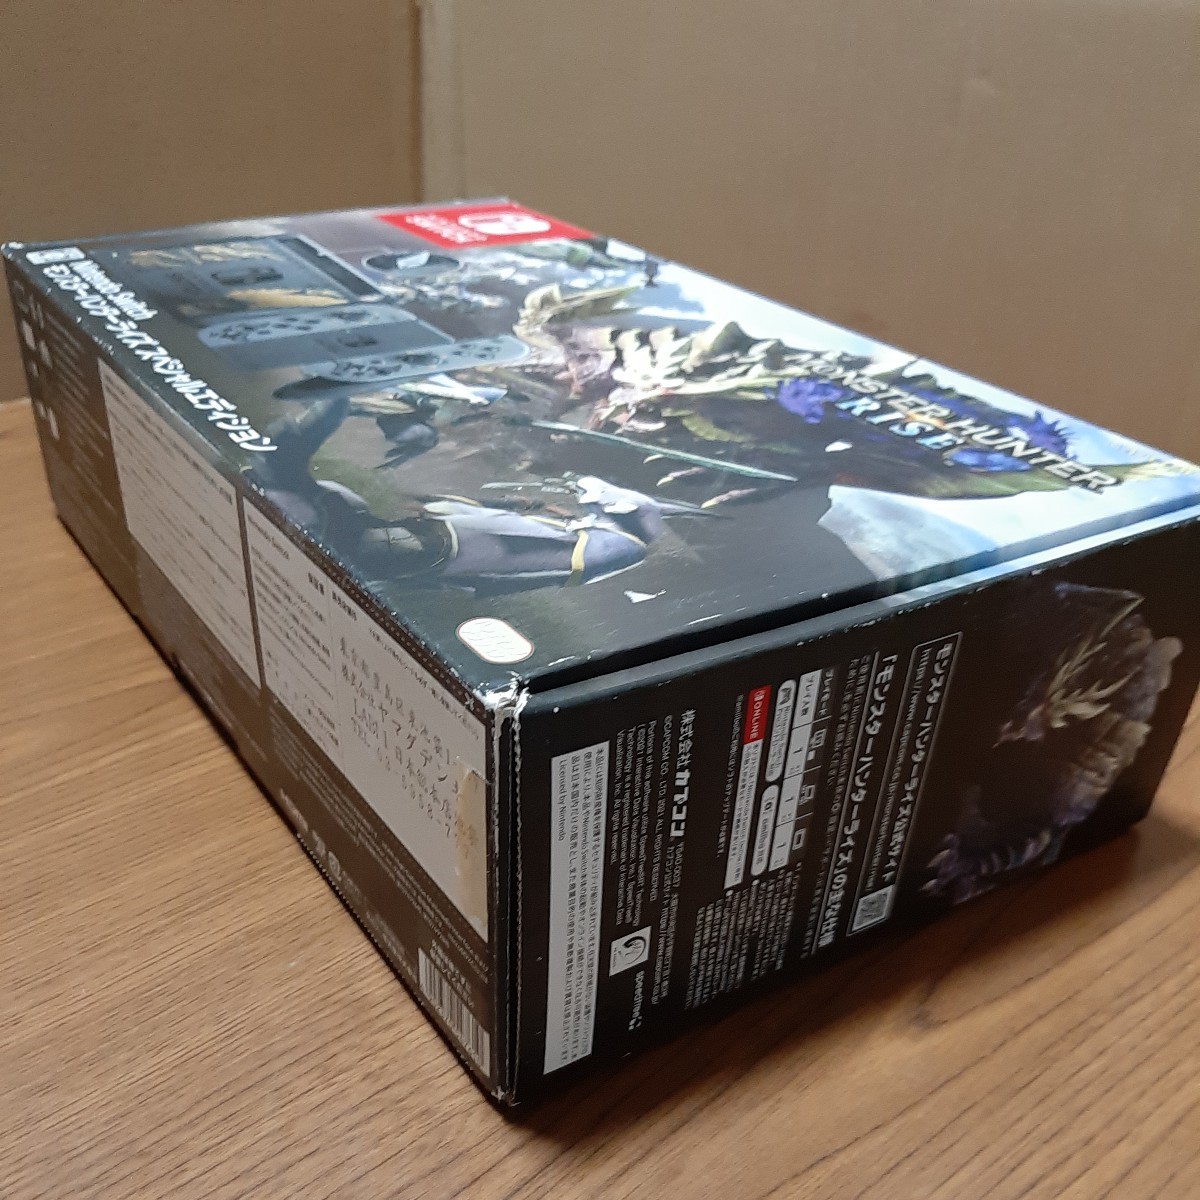 ニンテンドー 任天堂 スイッチの箱 外箱 空箱のみ 本体なし Nintendo SWITCH モンスターハンターライズ スペシャルエディションの箱の画像3